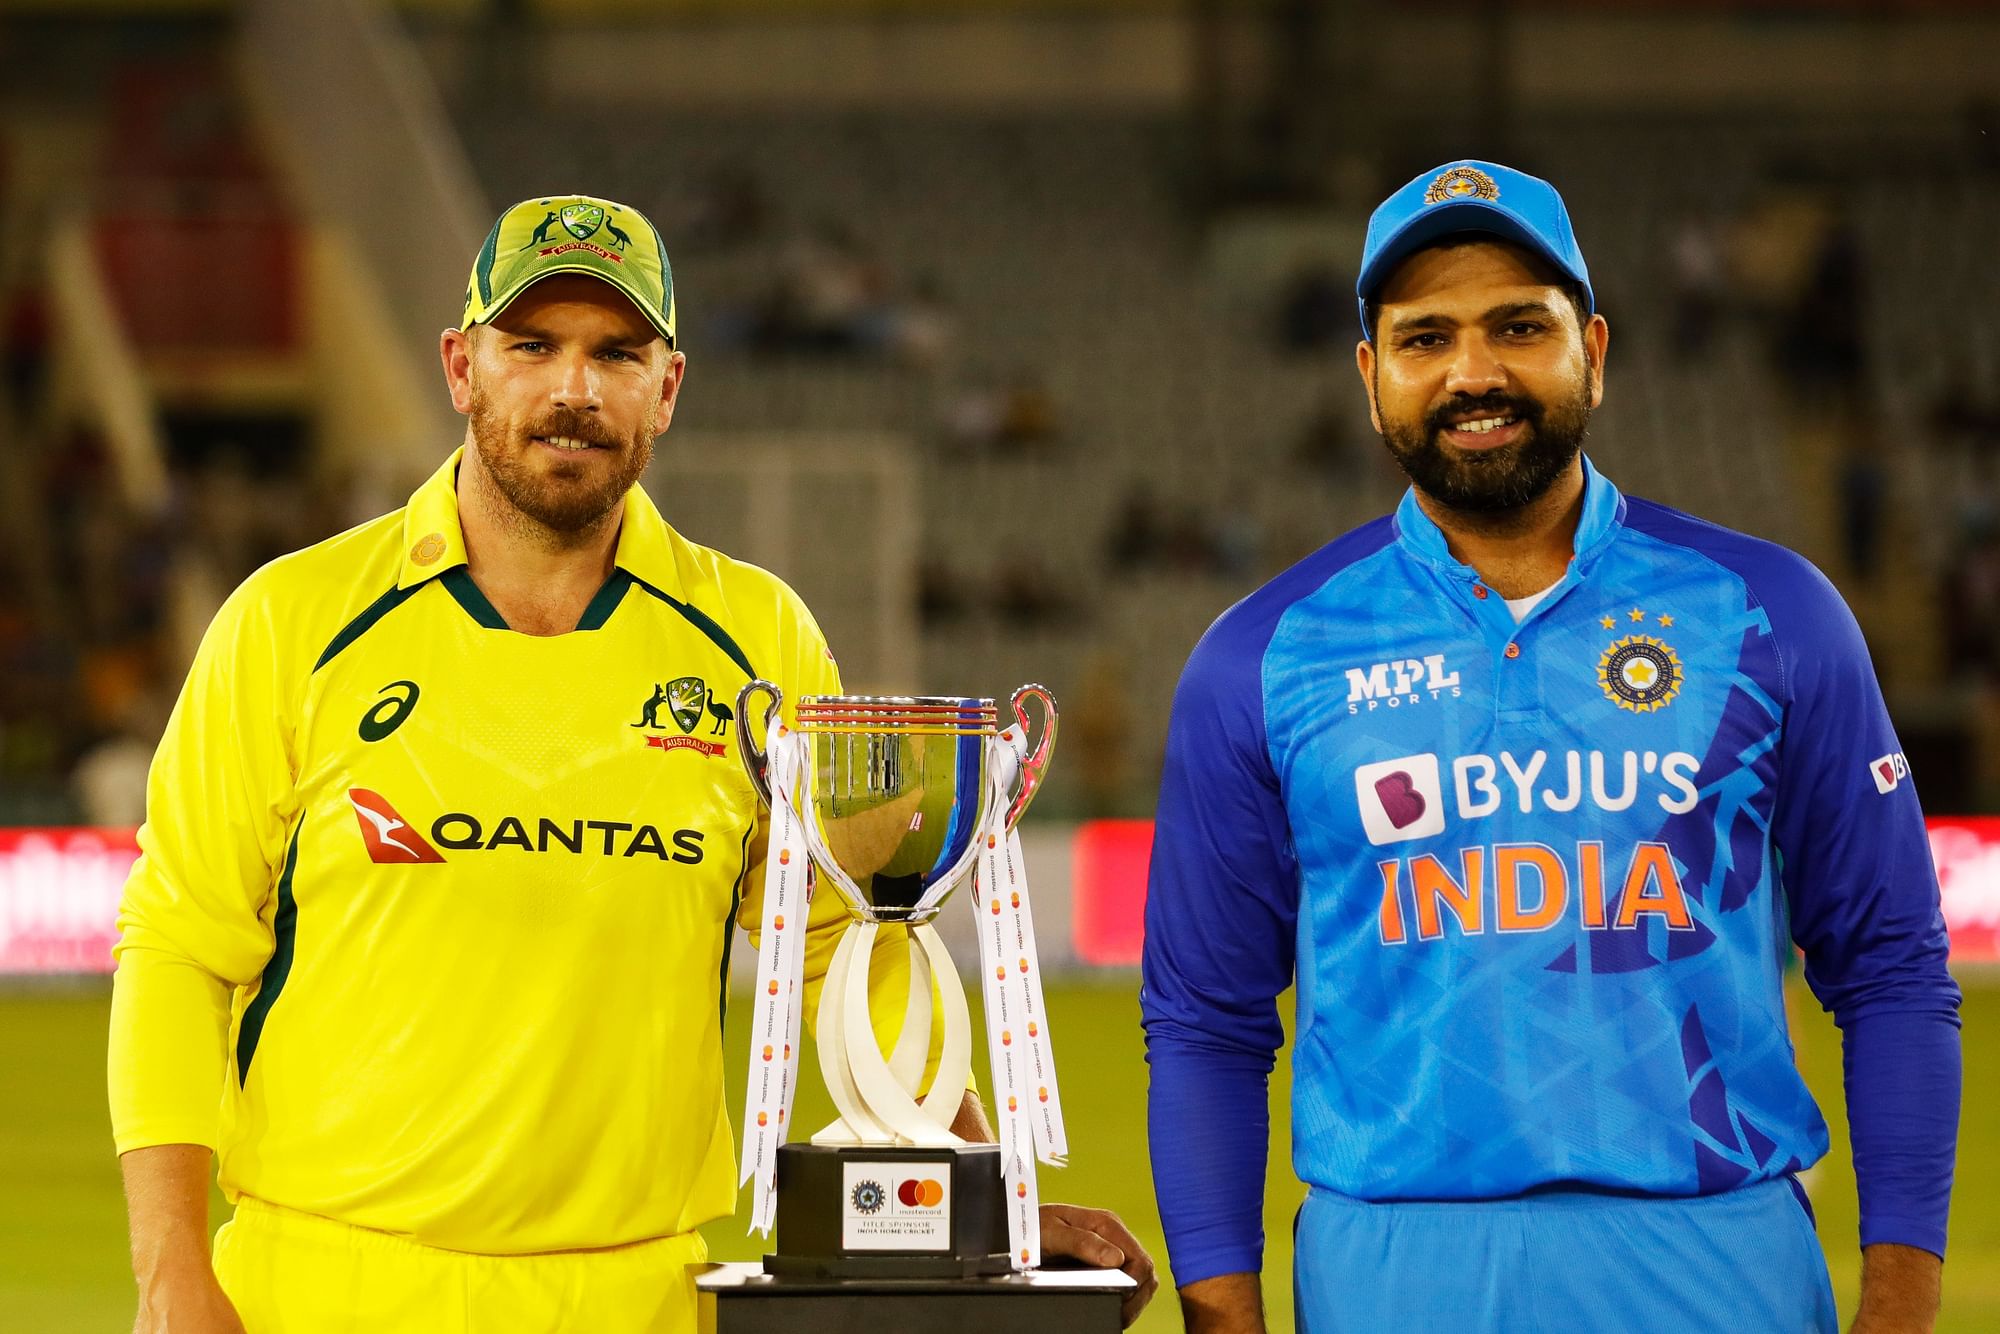 <div class="paragraphs"><p>India Vs Australia 1st T20I Match Latest Updates</p></div>